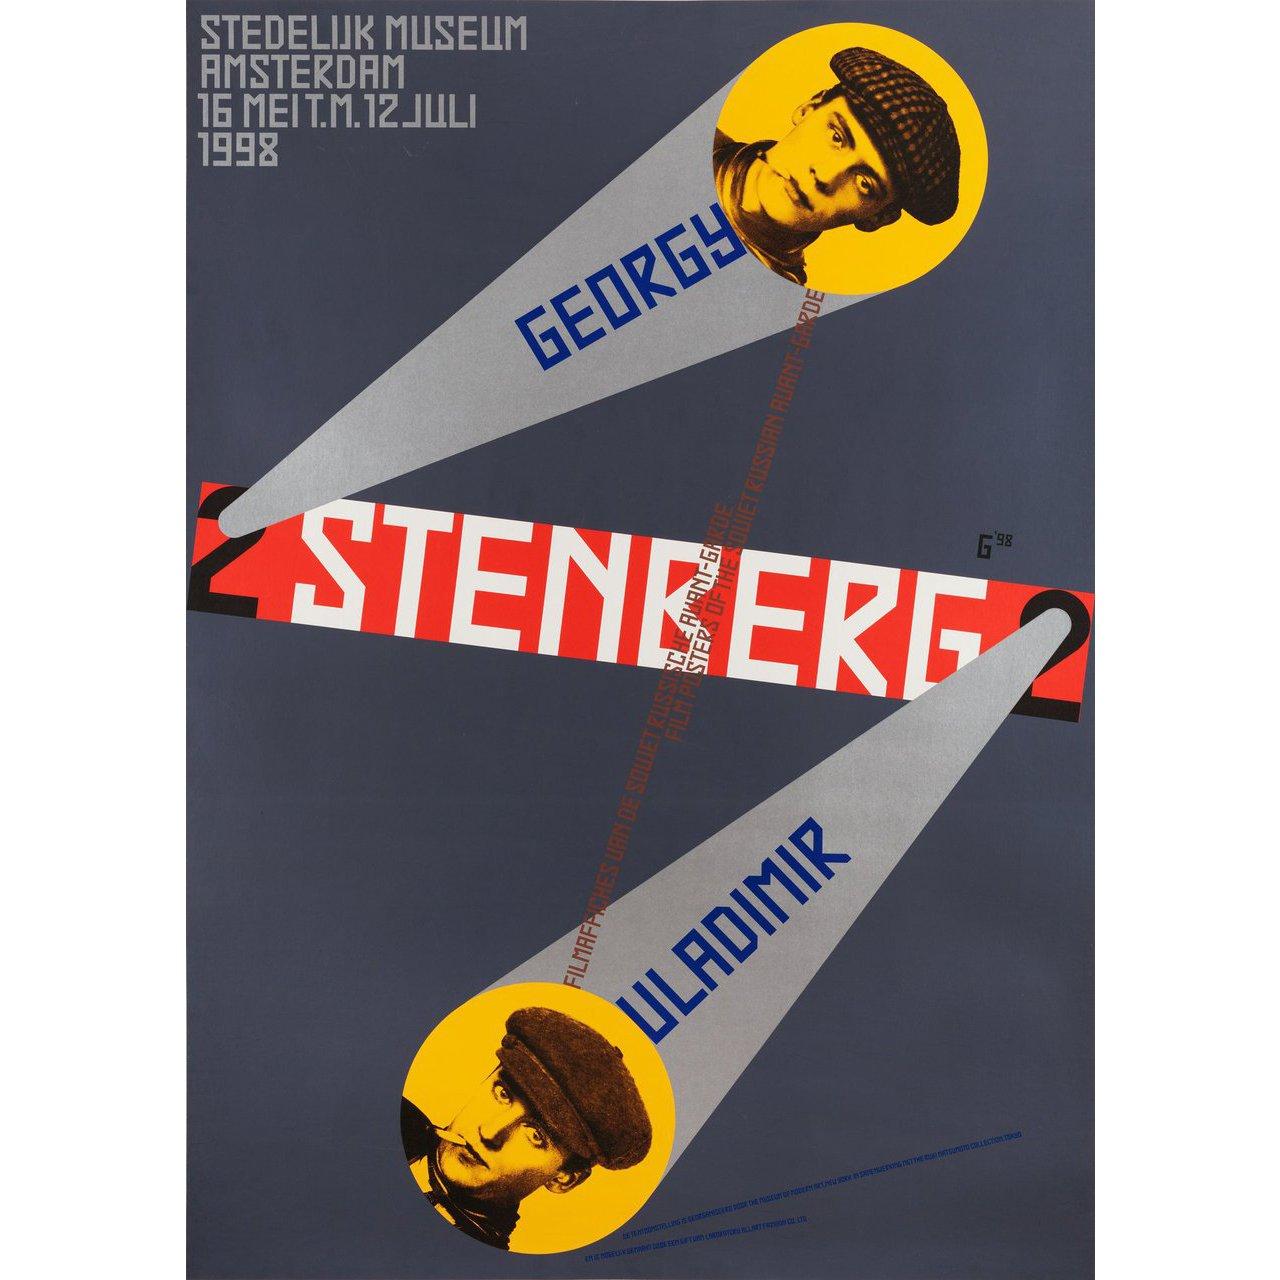 Original Schweizer A0-Plakat von Gielijn Escher aus dem Jahr 1998 für den Film Filmaffiches Van Gregory En Vladamir Stenberg. Guter Zustand, mit Leinenrücken. Dieses Poster wurde professionell mit Leinen hinterlegt. Bitte beachten Sie: Die Größe ist